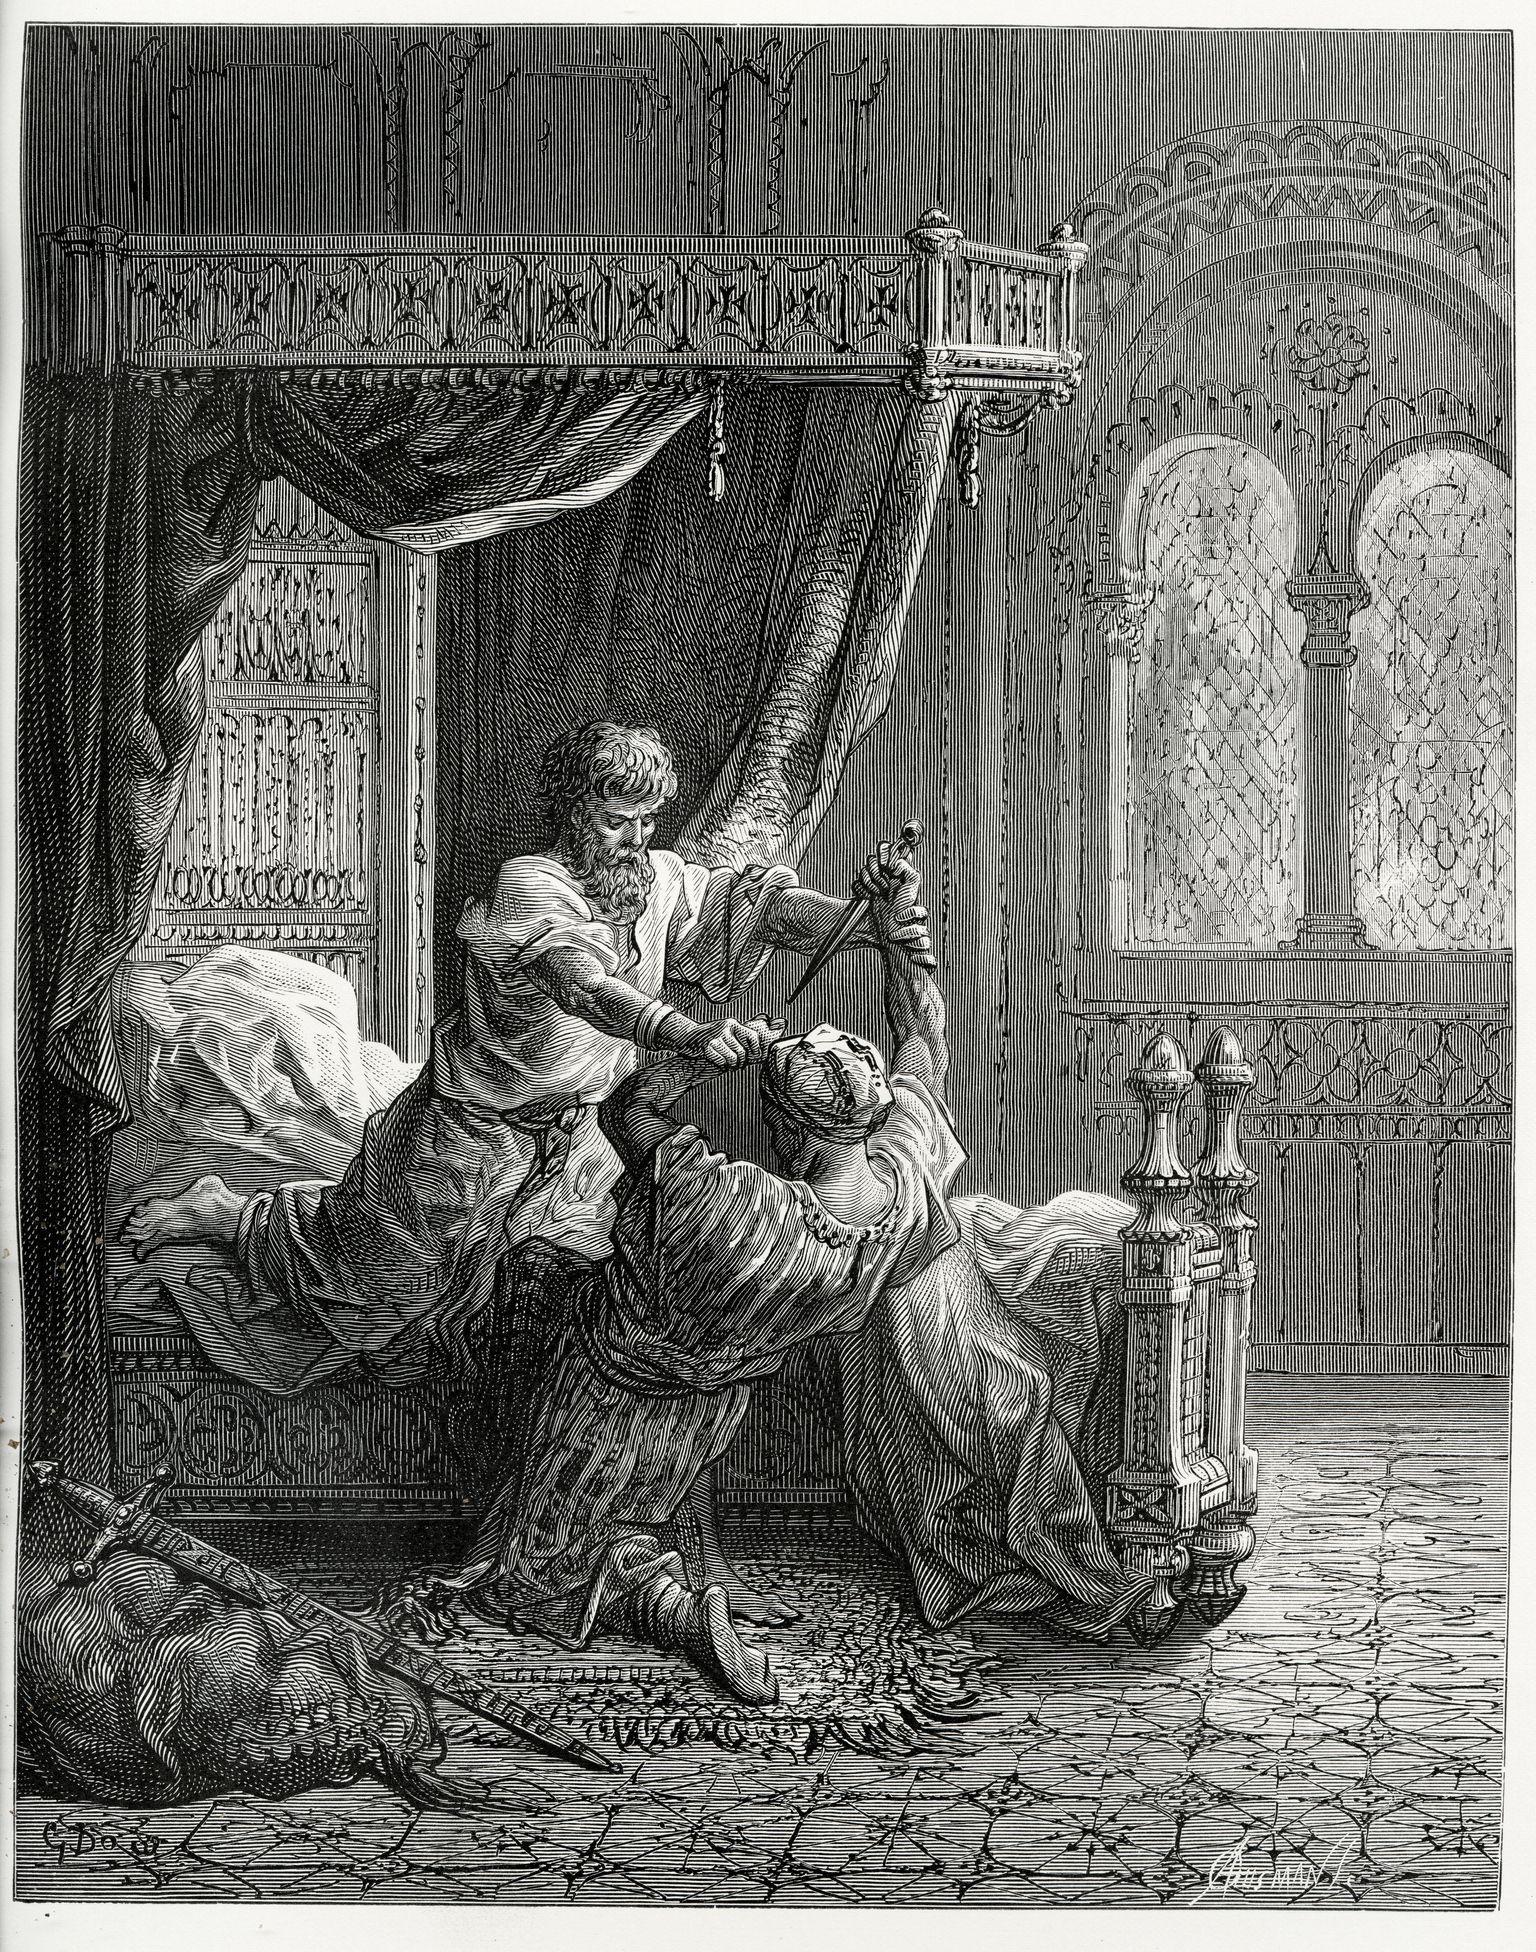 Gravura do ataque contra o rei Eduardo 1º da Inglaterra do século 19